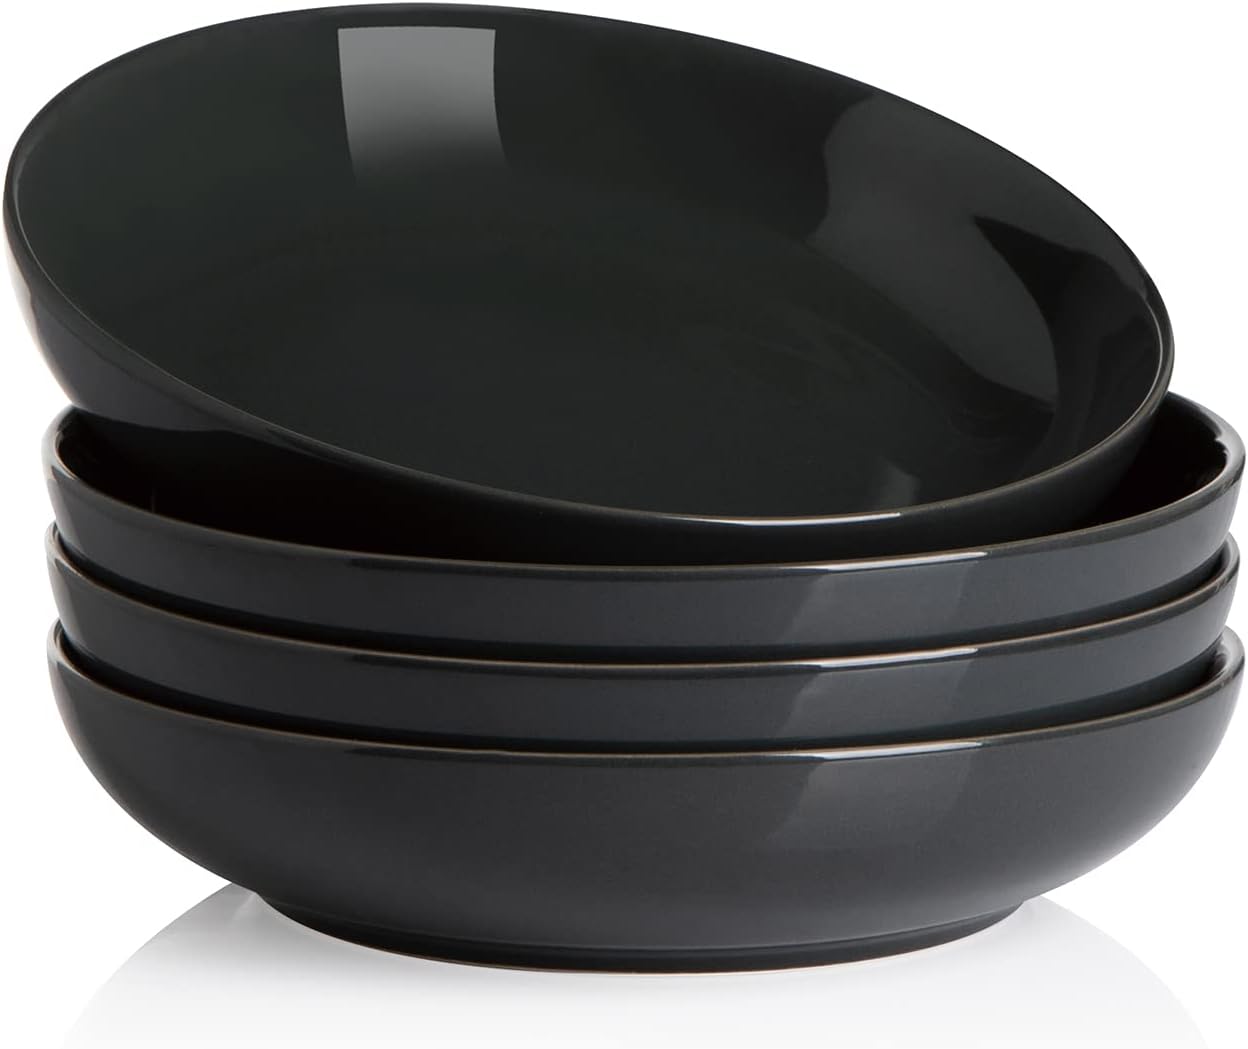 SWEEJAR-Pasta-Bowls-Ceramic-Dinner-Plates